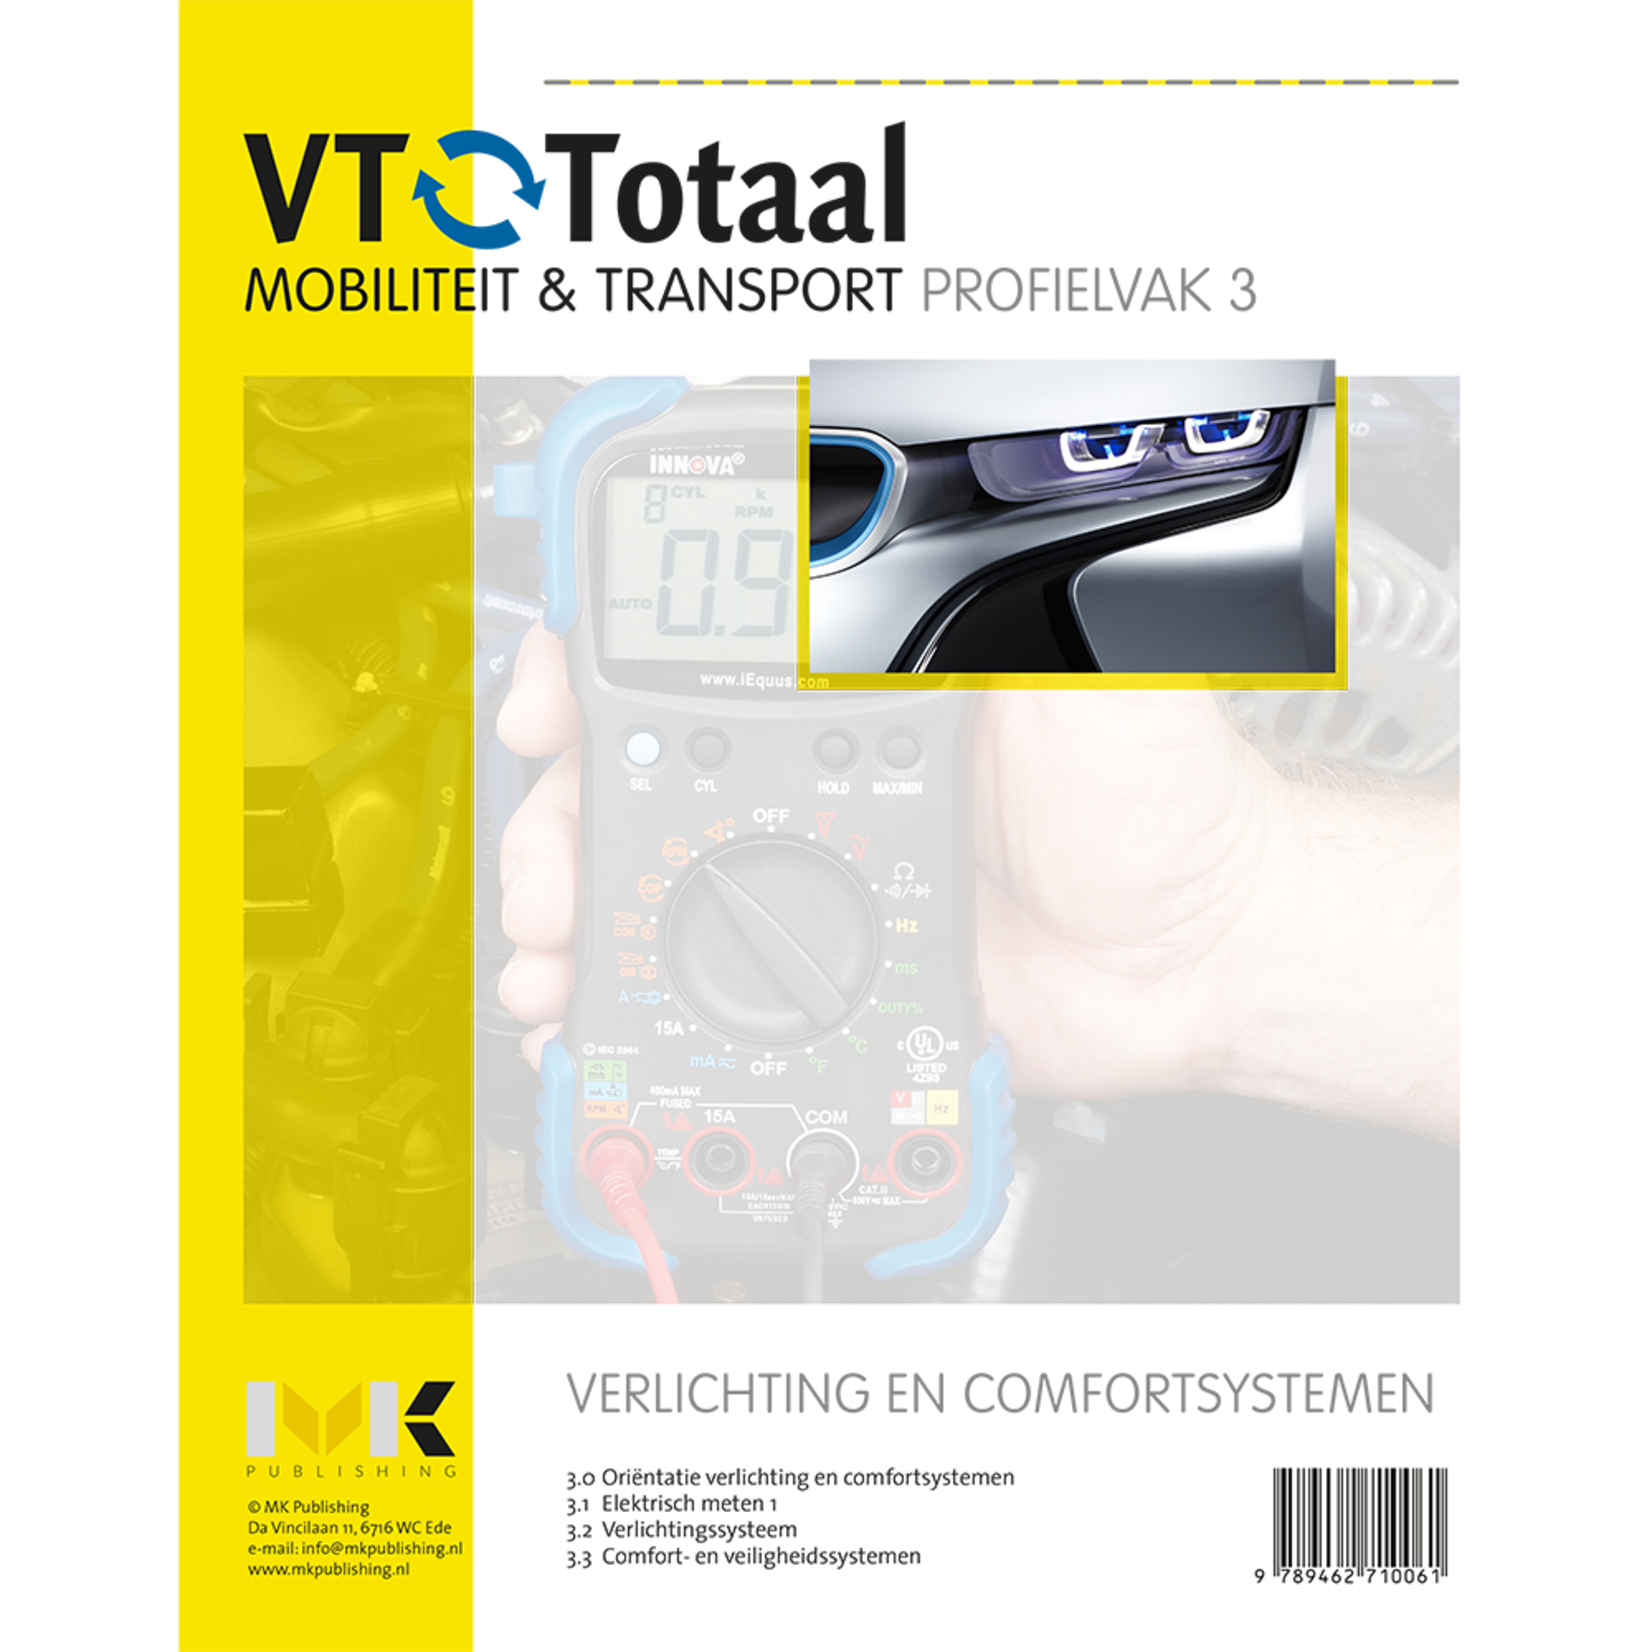 VT-Totaal M&T Profielvak 3 Verlichting- en comfortsystemen